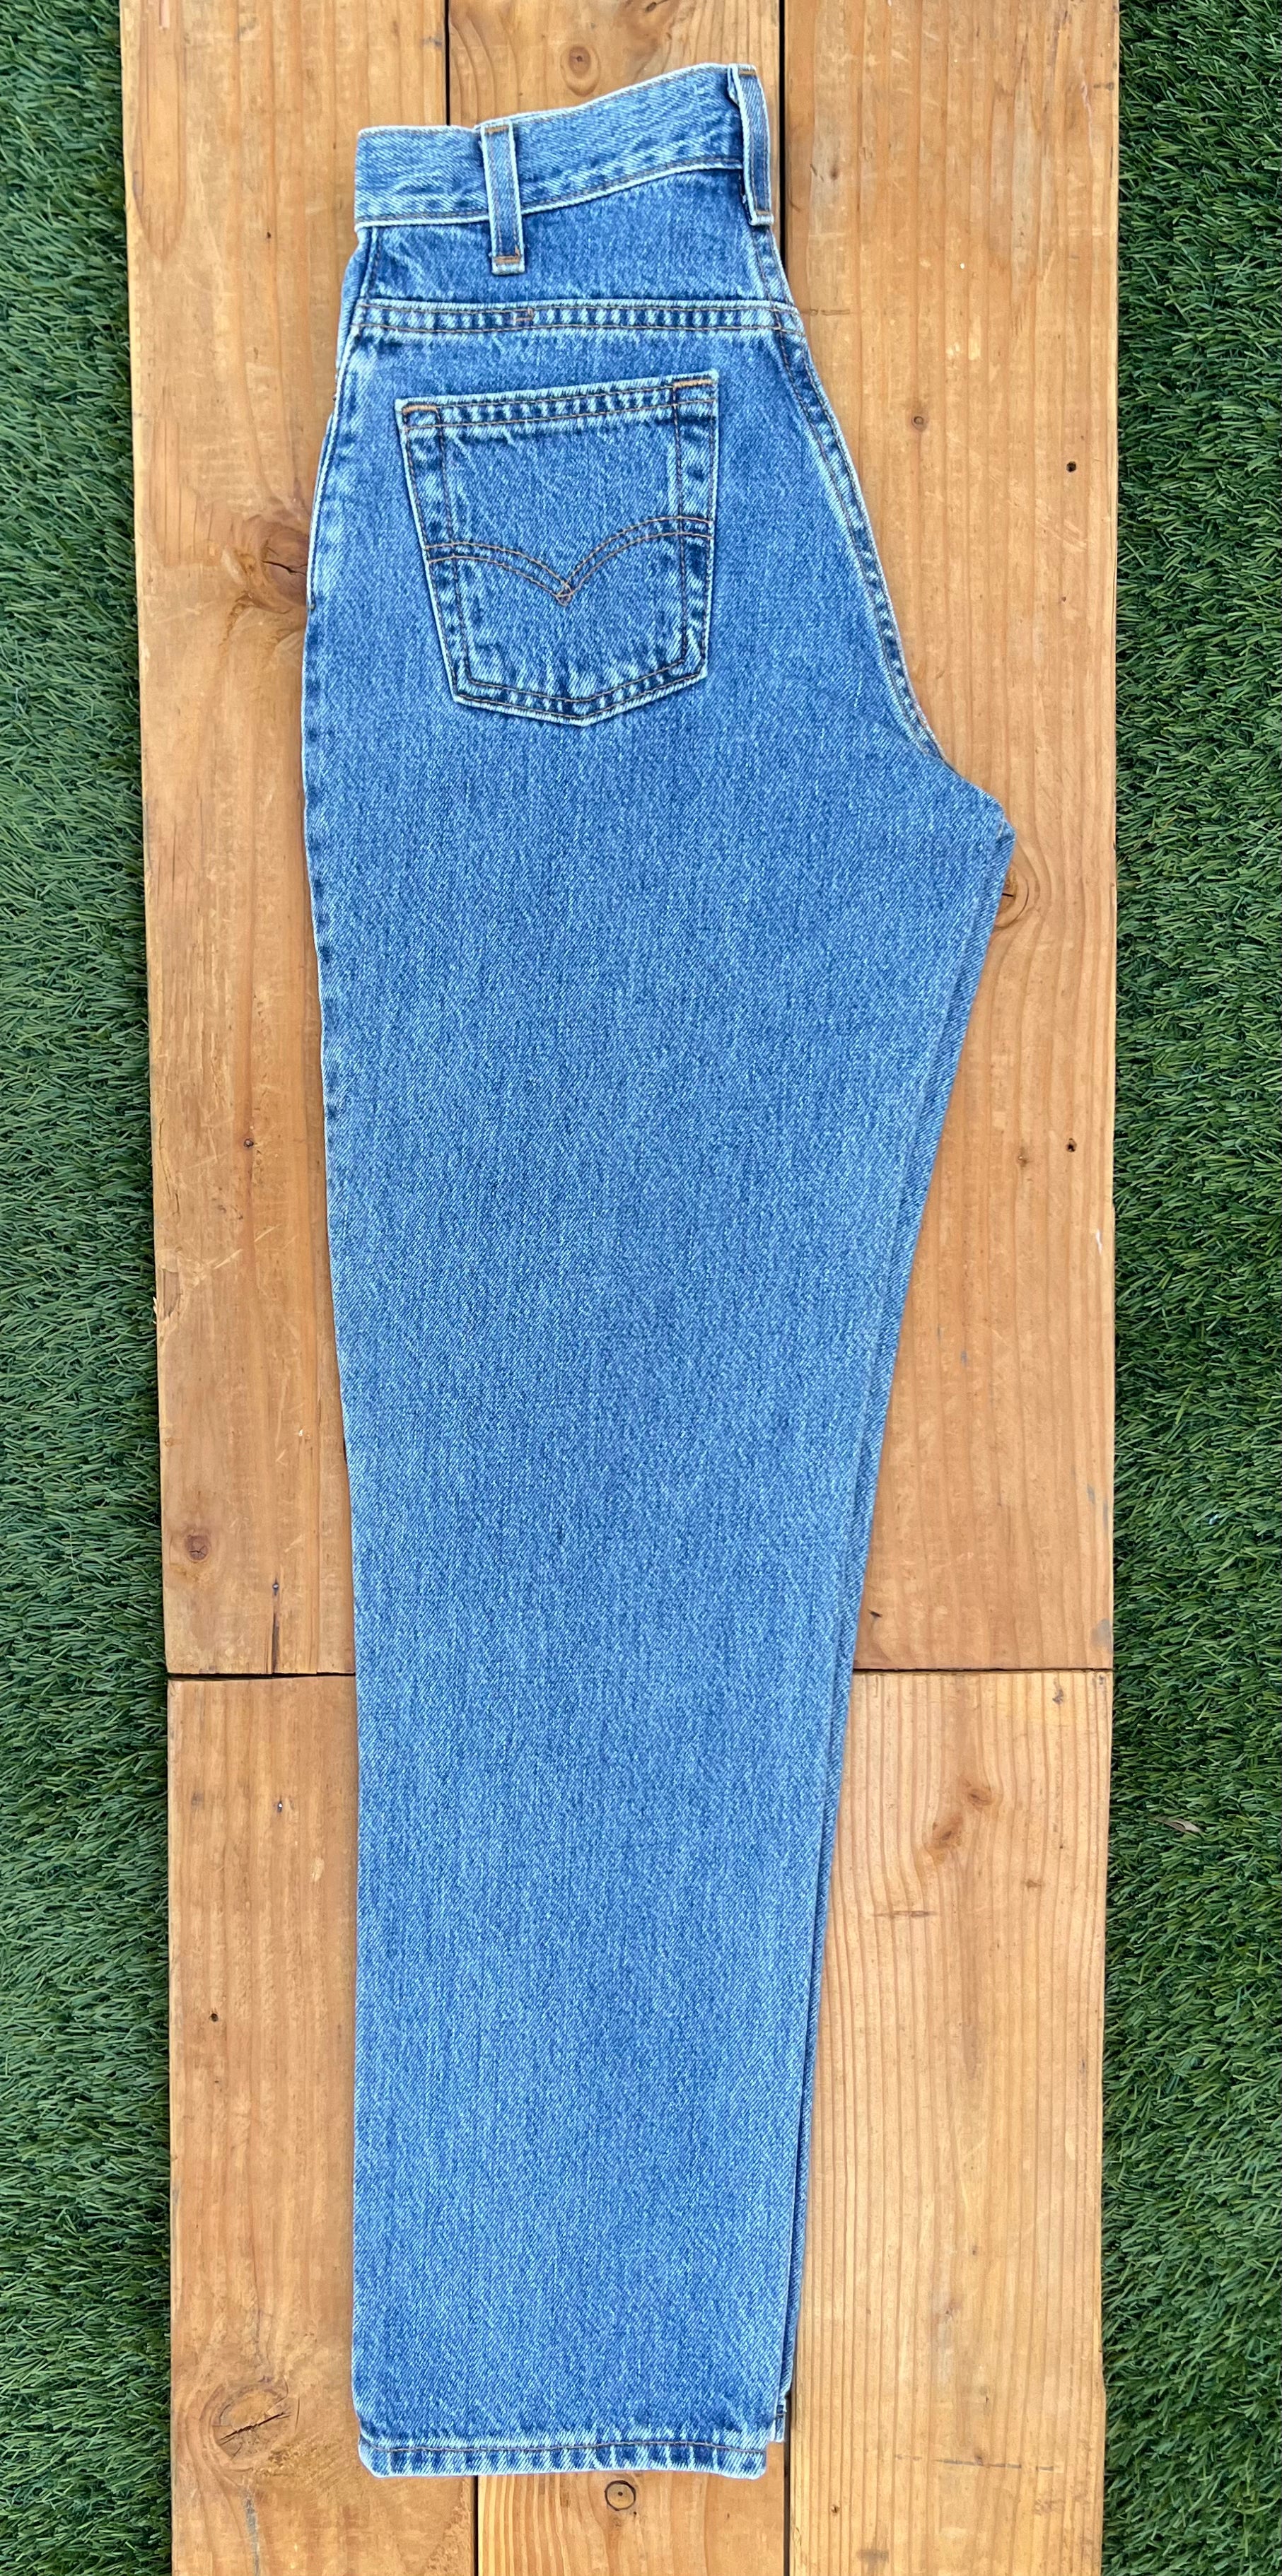 W25 550 Vintage Levi's Plain Jean